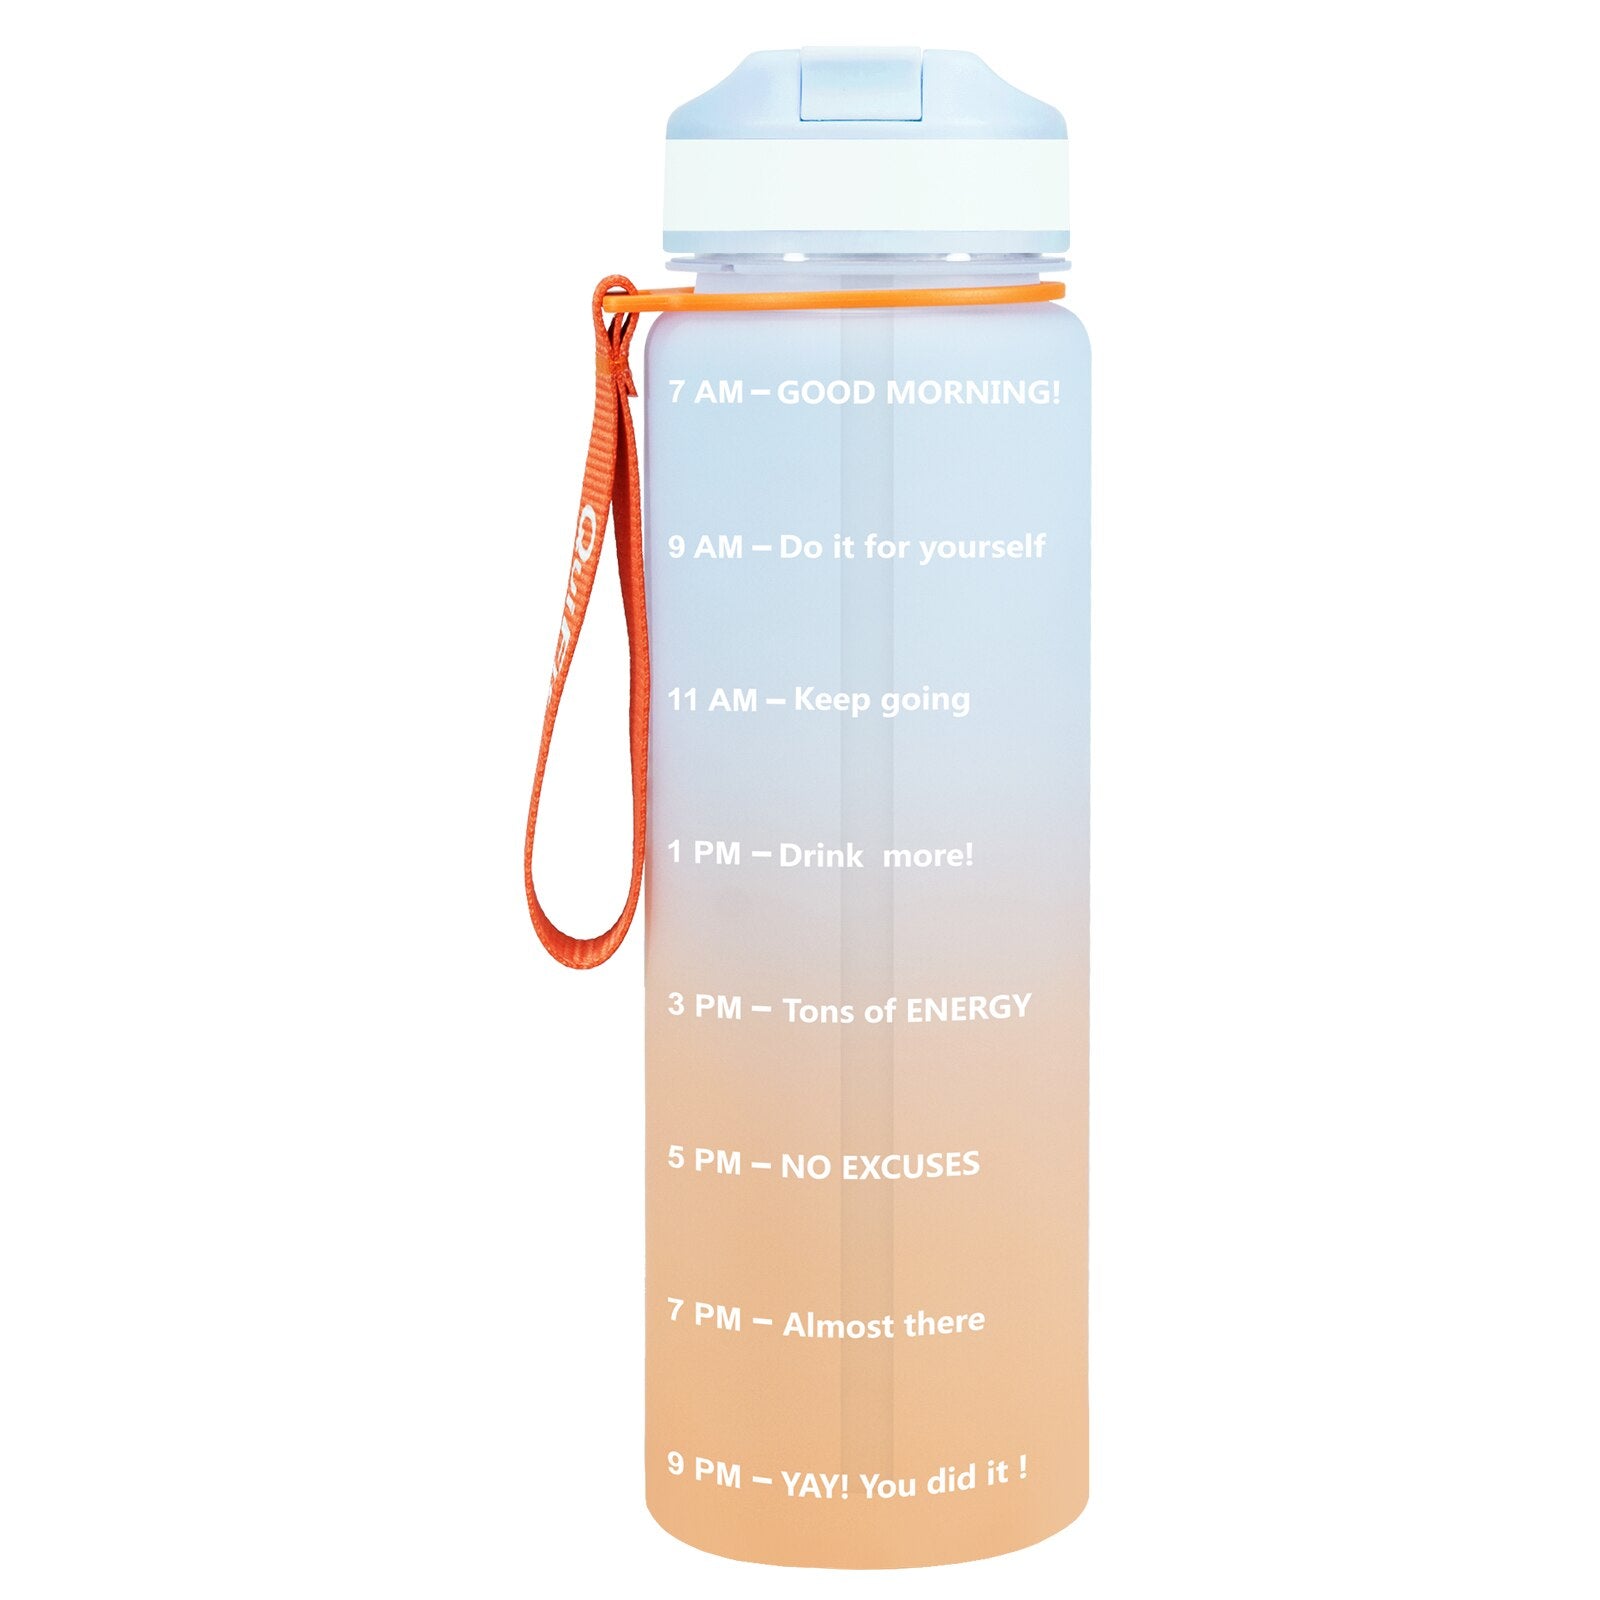 Eine orange-blaue Sporttrinkflasche mit einer Zeitmarkierungen sowie motivierenden Spruechen für verschiedene Tageszeiten. Die Flasche hat eine orange Trageschlaufe und einen Deckel mit einem aufklappbaren Trinkverschluss.